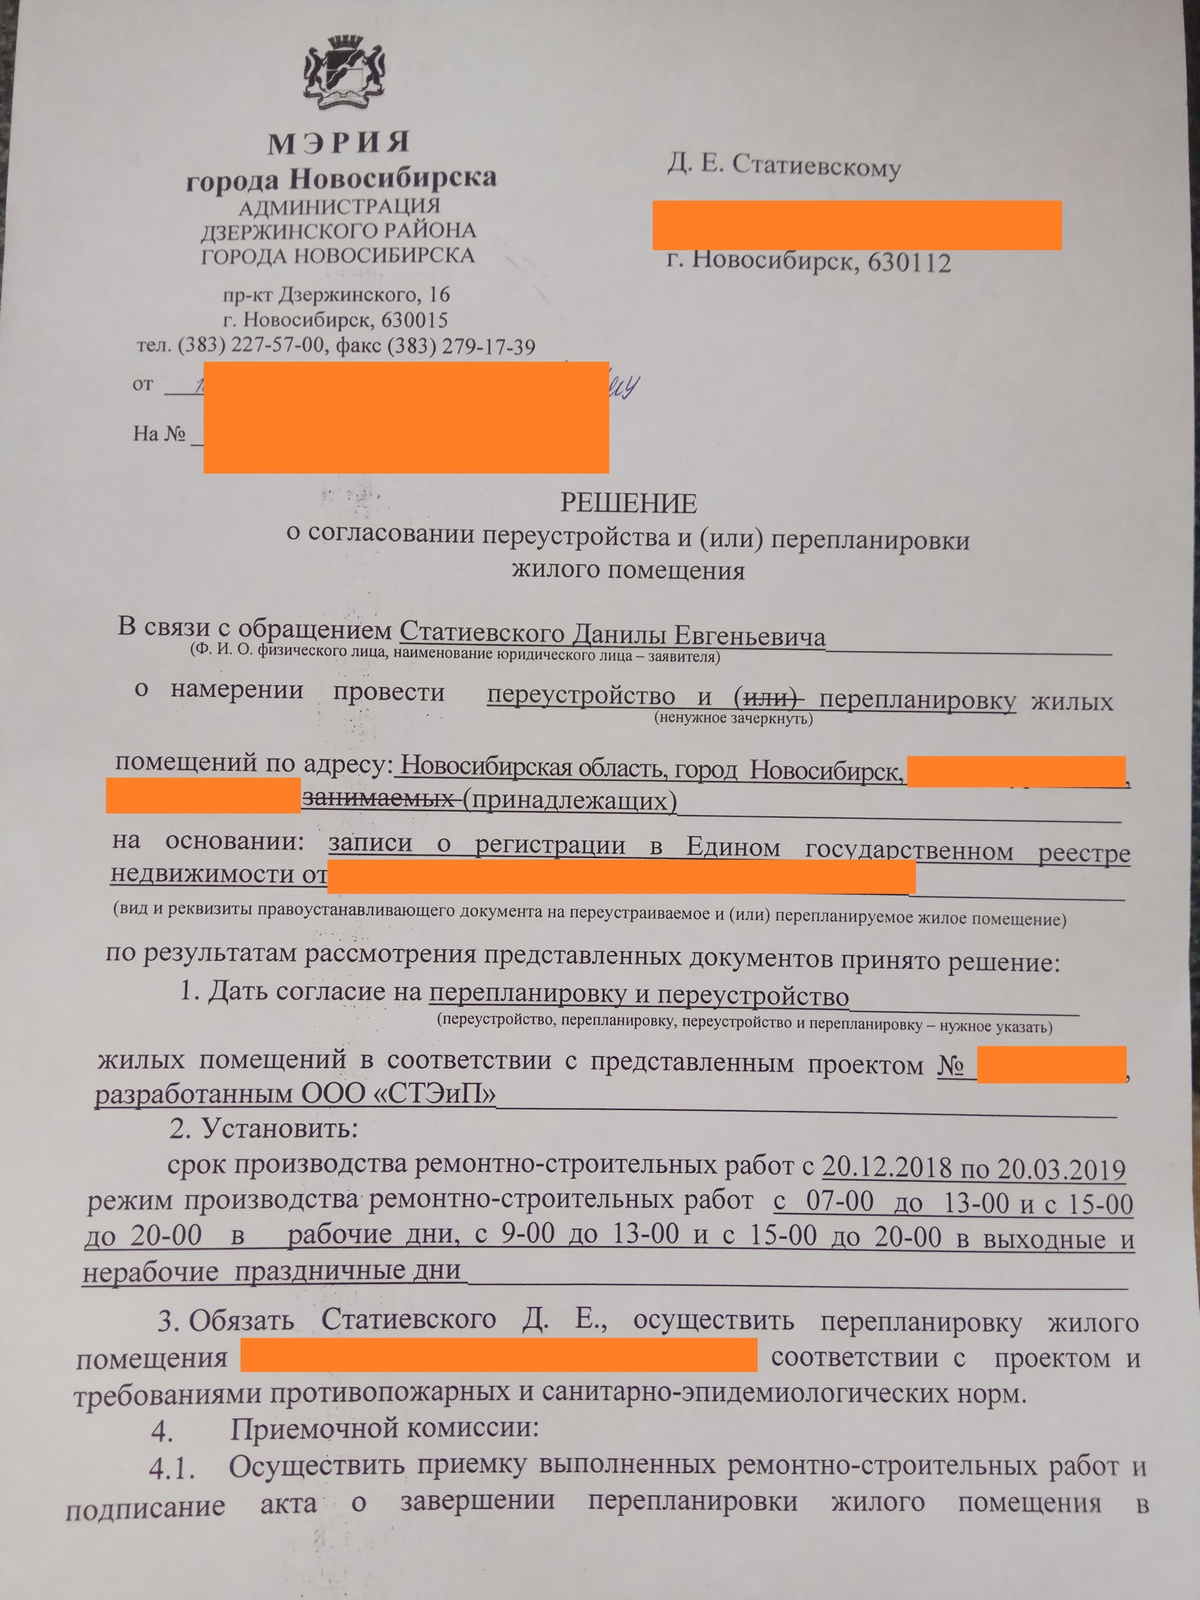 Официальное разрешение о согласовании перепланировки в Новосибирске